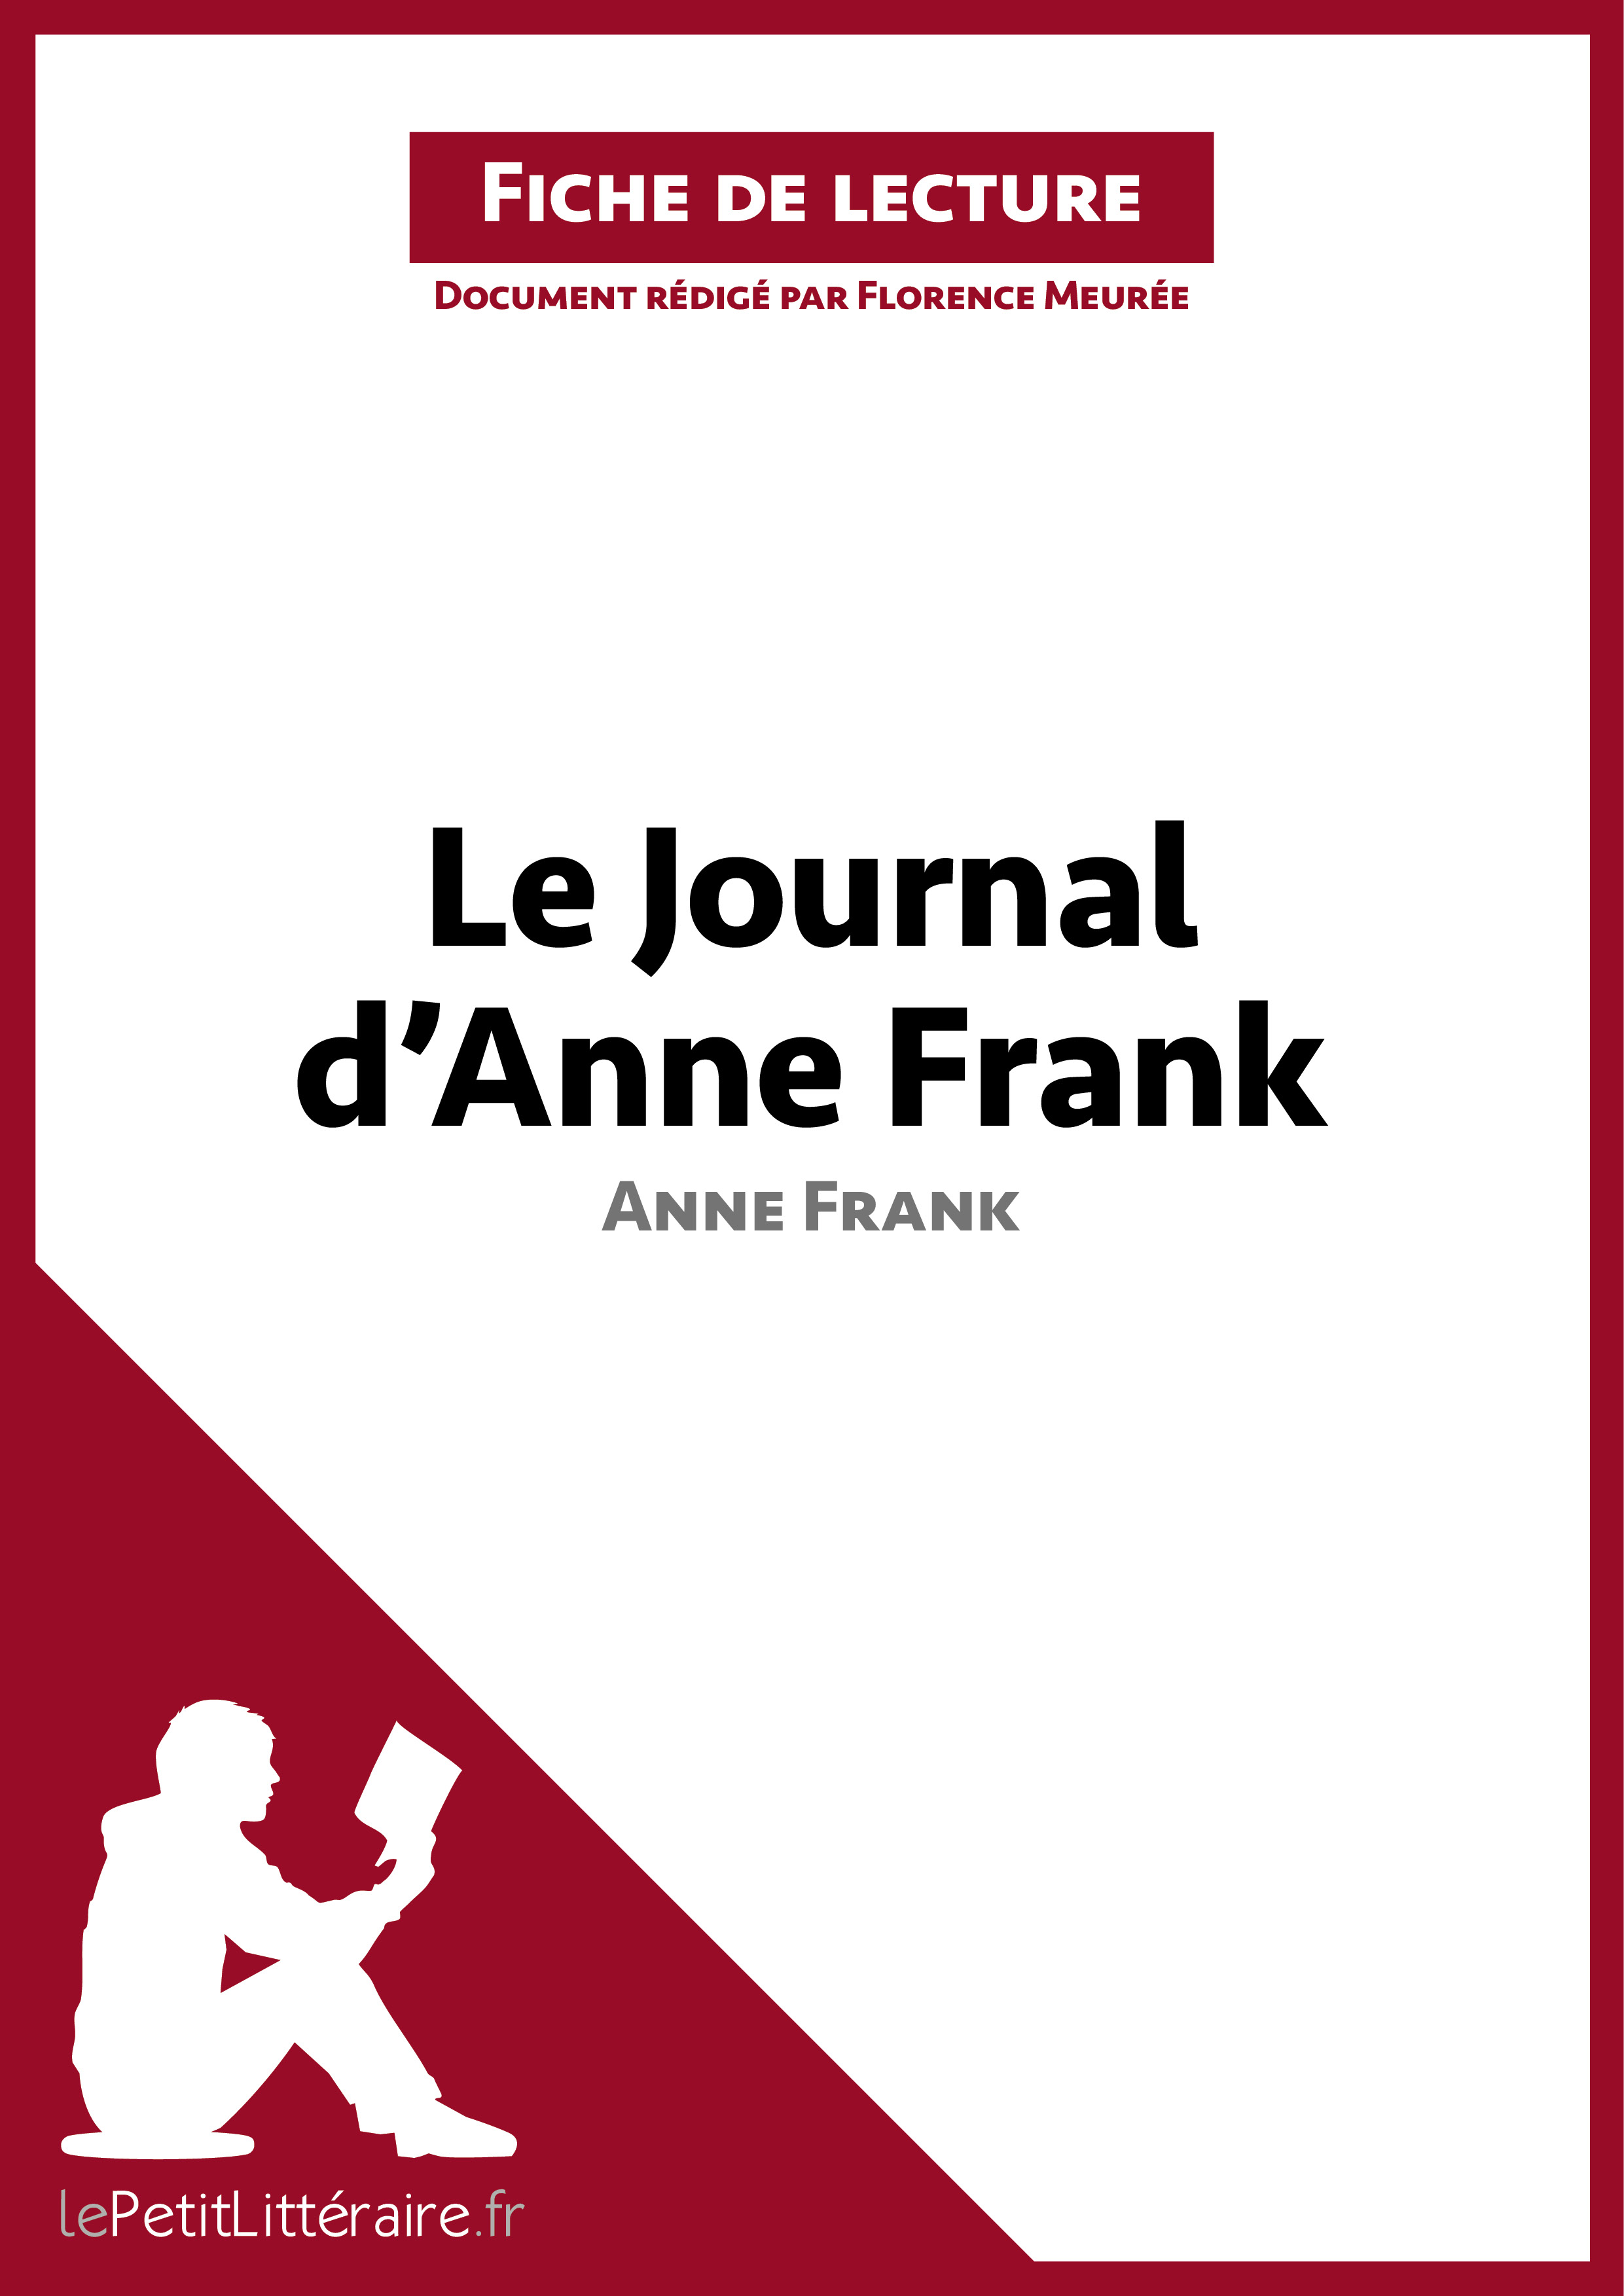 Le Journal D anne Frank Fiche De Lecture Ebook Le Journal d'Anne Frank d'Anne Frank (Fiche de lecture) - Résumé